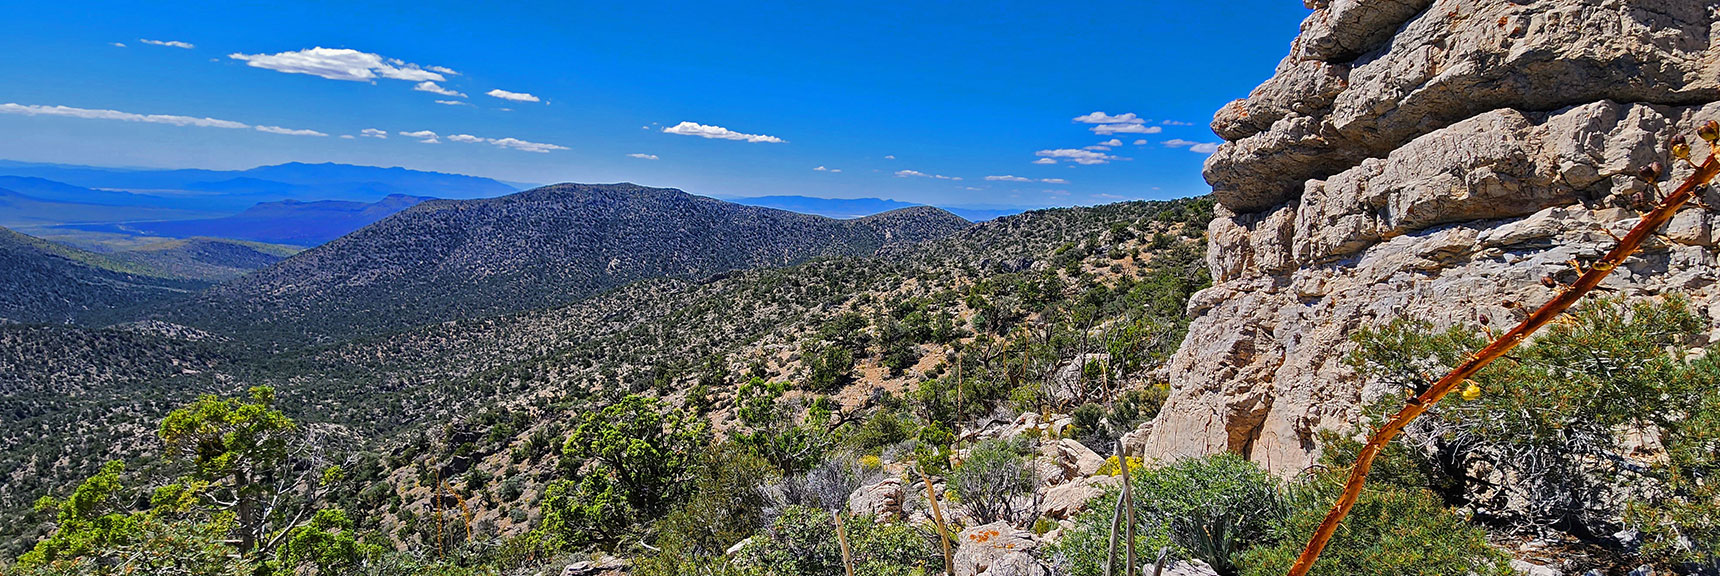 View Back to Wilson Ridge and Landmark Bluff from a Ridgeline High Point. | Mt Wilson to Juniper Peak | Rainbow Mountains Upper Crest Ridgeline | Rainbow Mountain Wilderness, Nevada